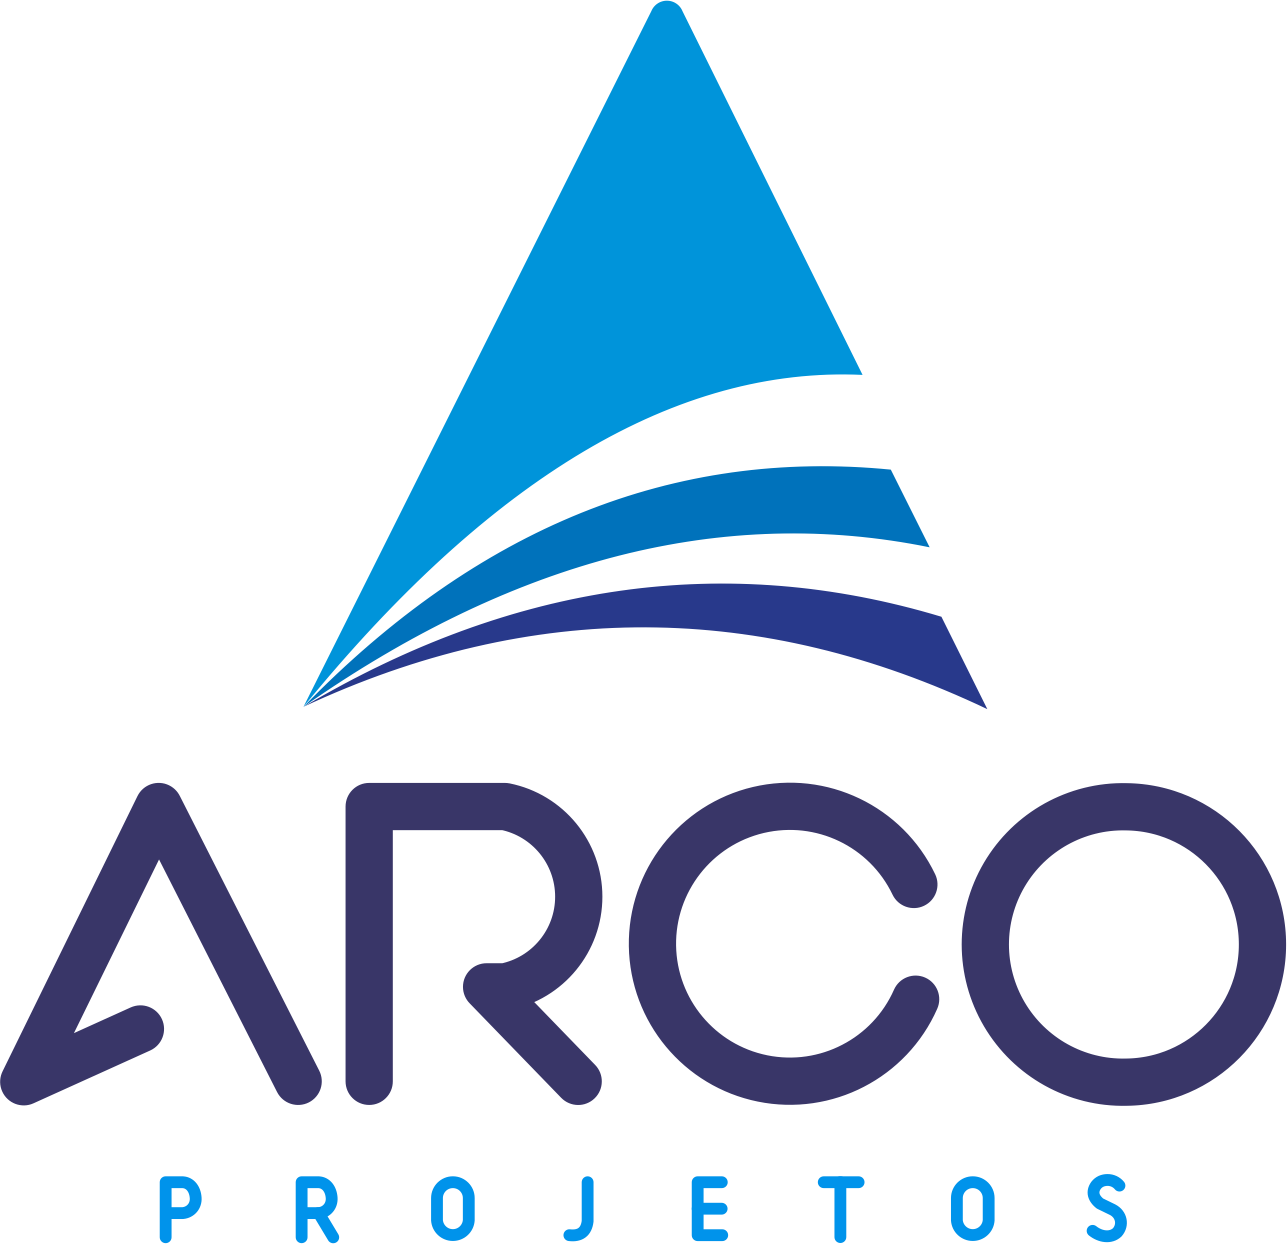 ARCO PROJETOS - Arquitetos - Salvador, BA